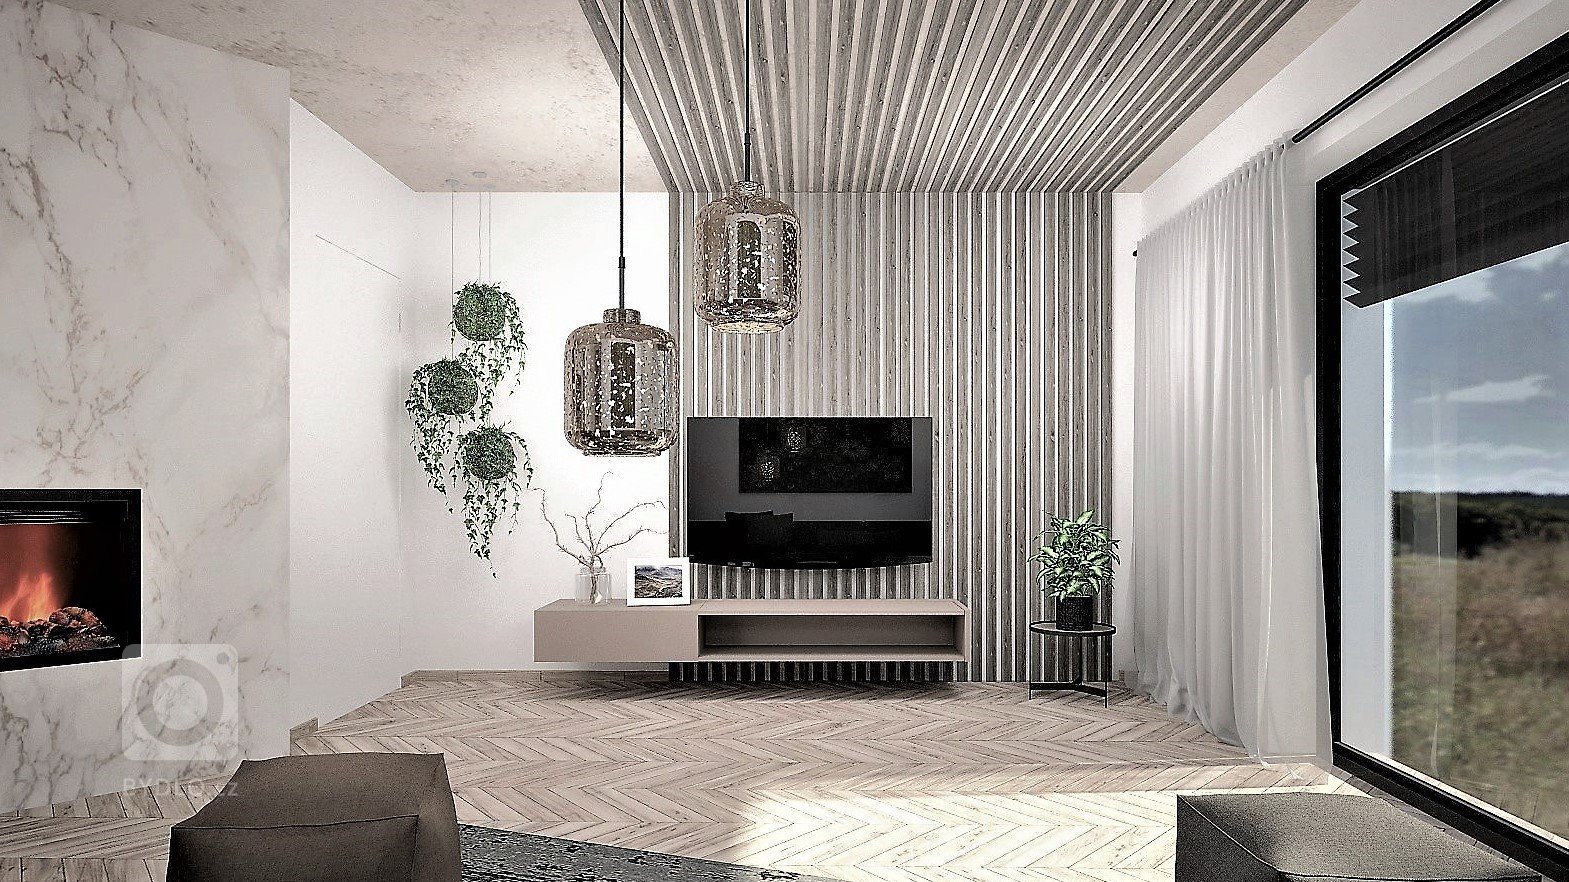 Interiér budoucího domu pro mladý sympatický pár, jehož zadáním bylo, aby interiér byl moderní s použitím odstínů šedé a taupe barvy. Případné barevné oživení…